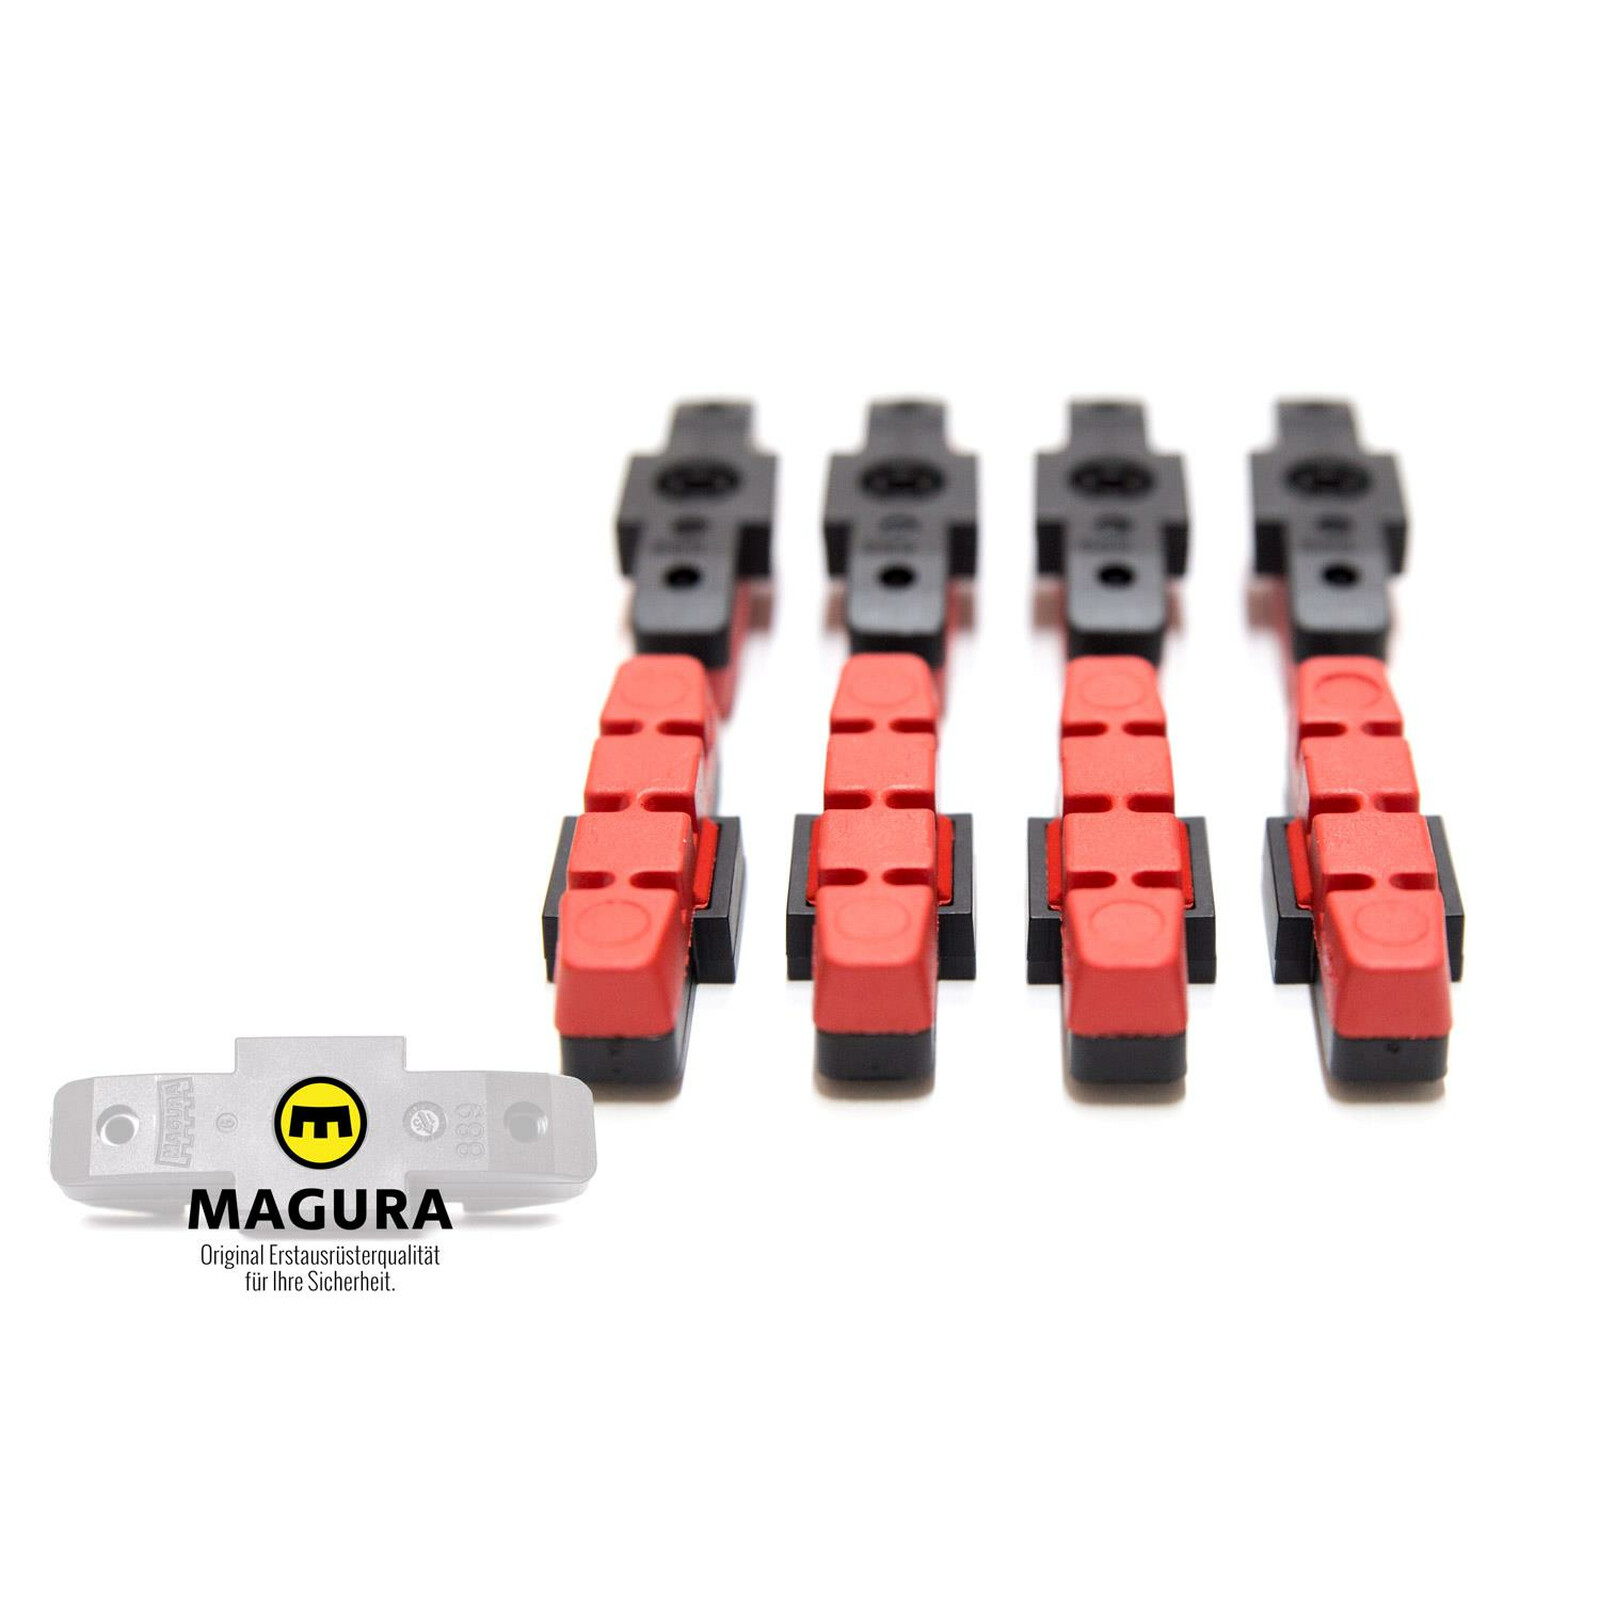 8 Stück MAGURA Original Bremsbelag hydraulische Felgenbremse HS11